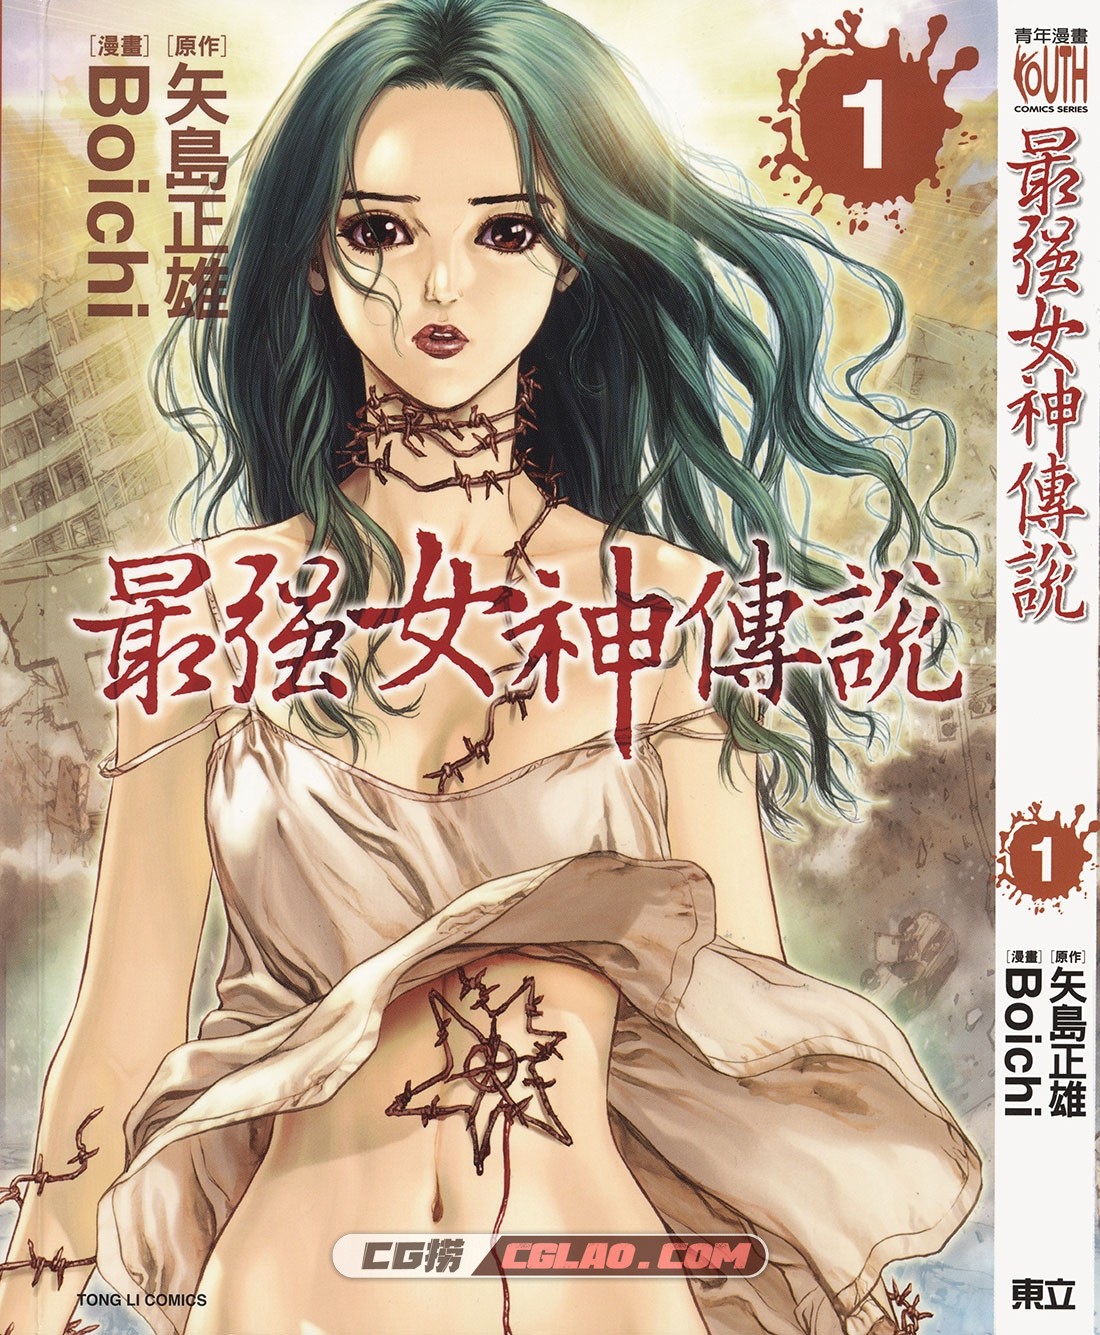 最强女神传说 Boichi 1-5卷全集完结下载 台湾繁体中文东立版,ZQN01_000.jpg